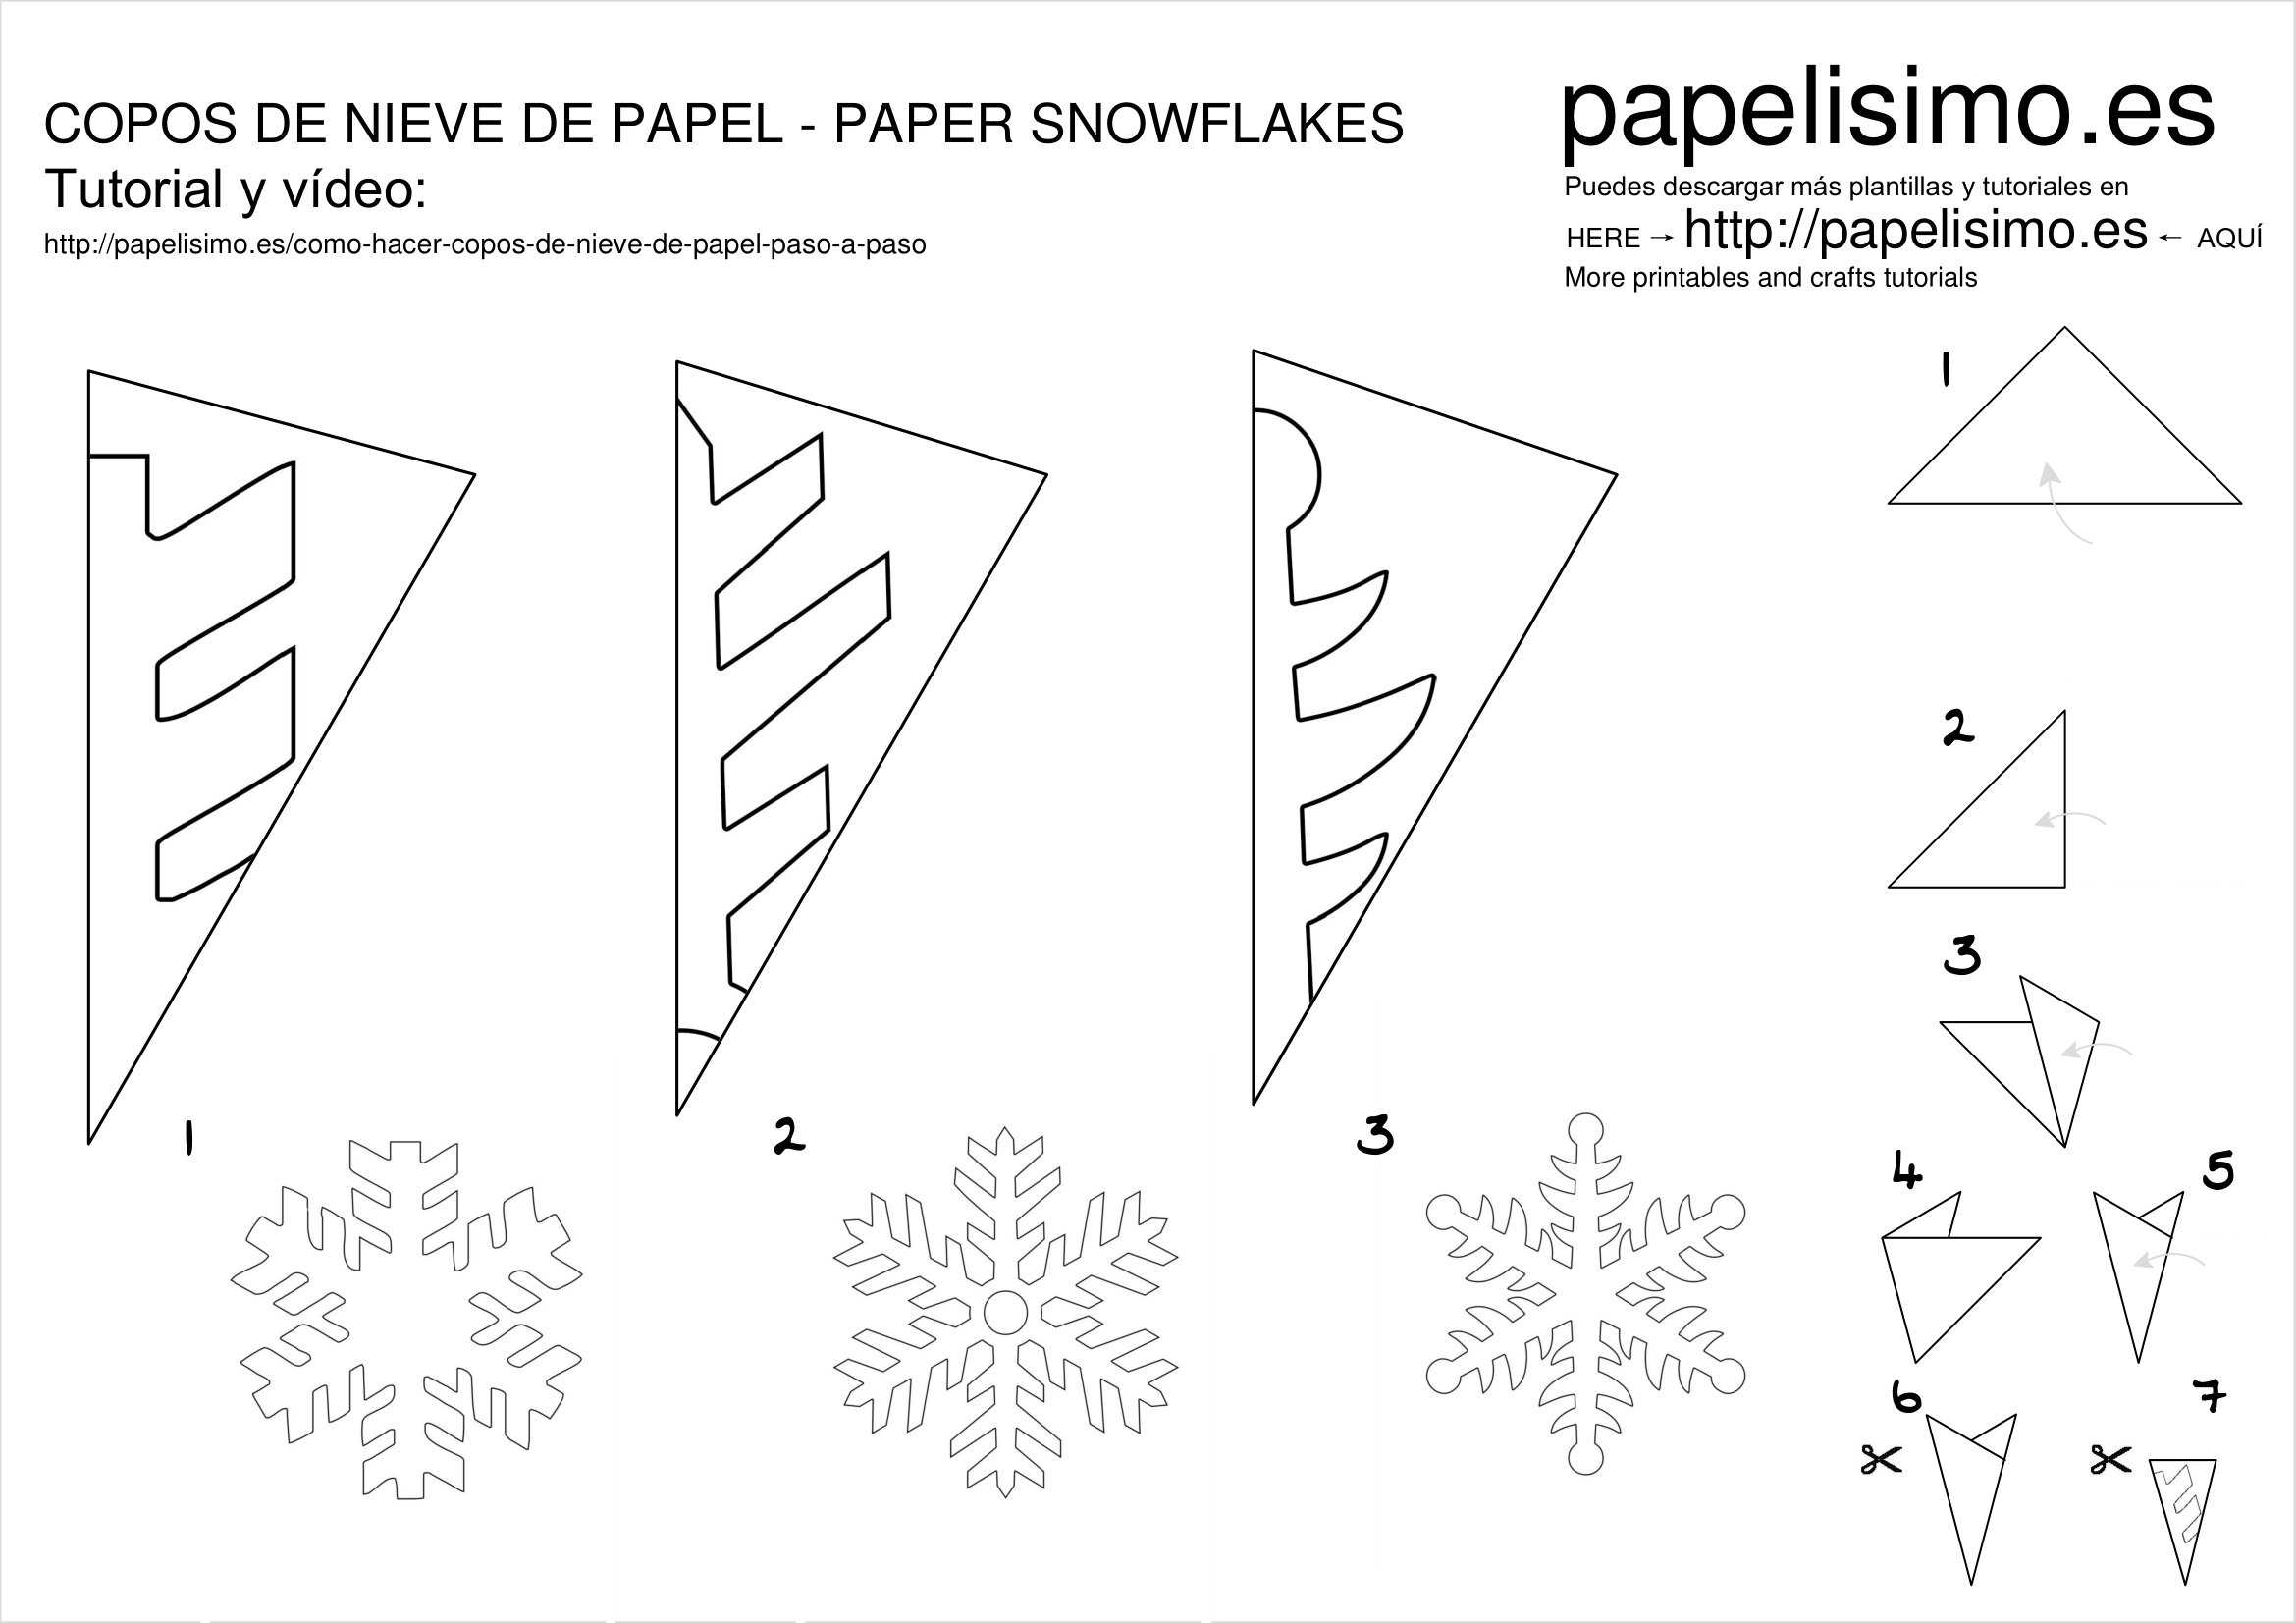 Объемные снежинки из бумаги своими руками, 11 мастер-классов